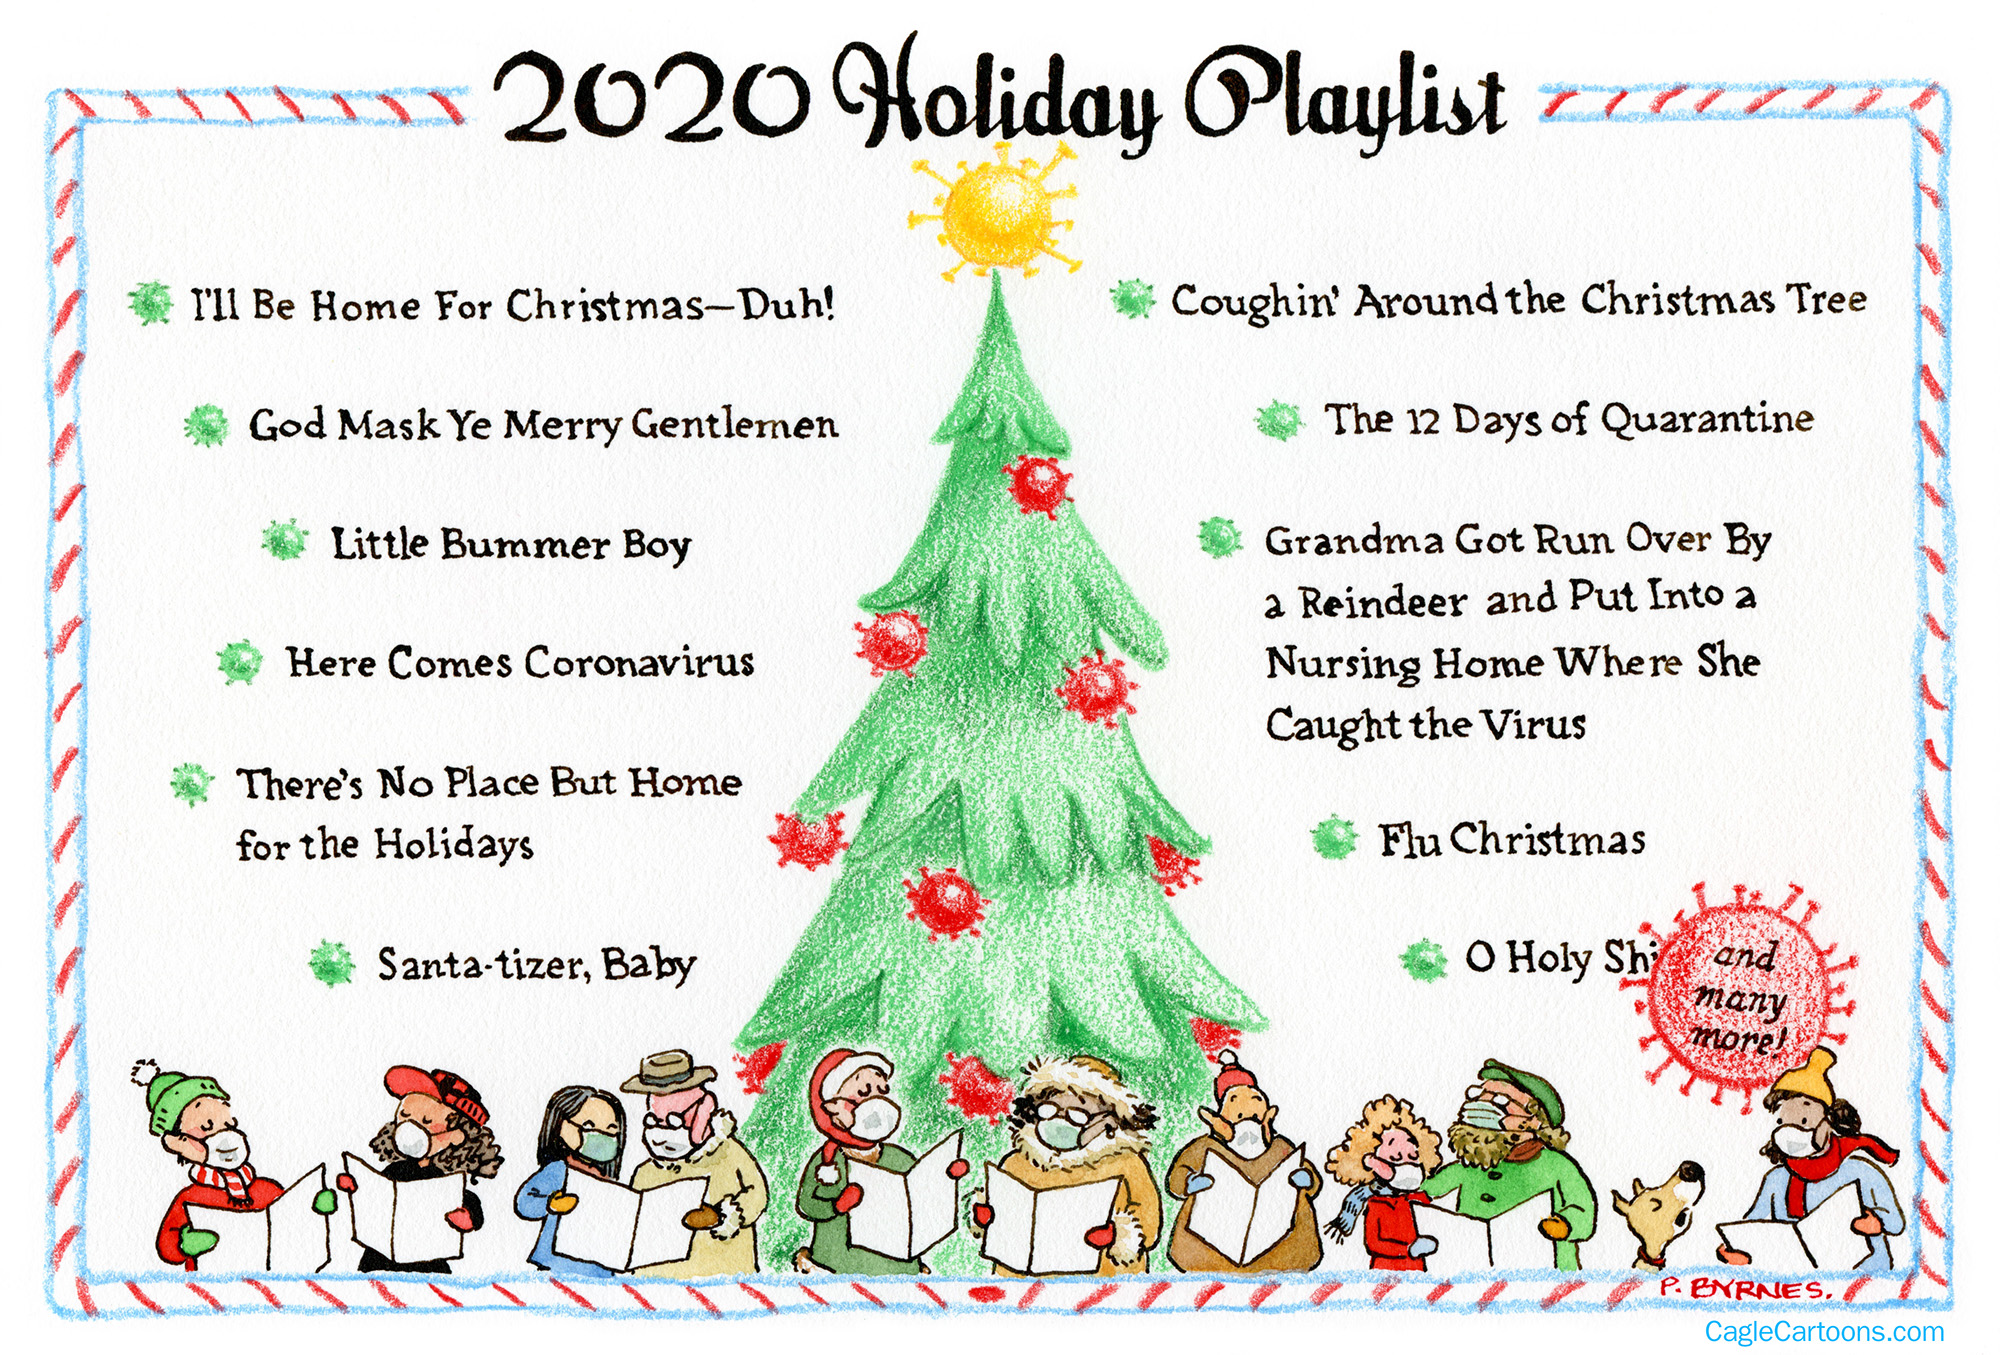 2020 Holiday Playlist